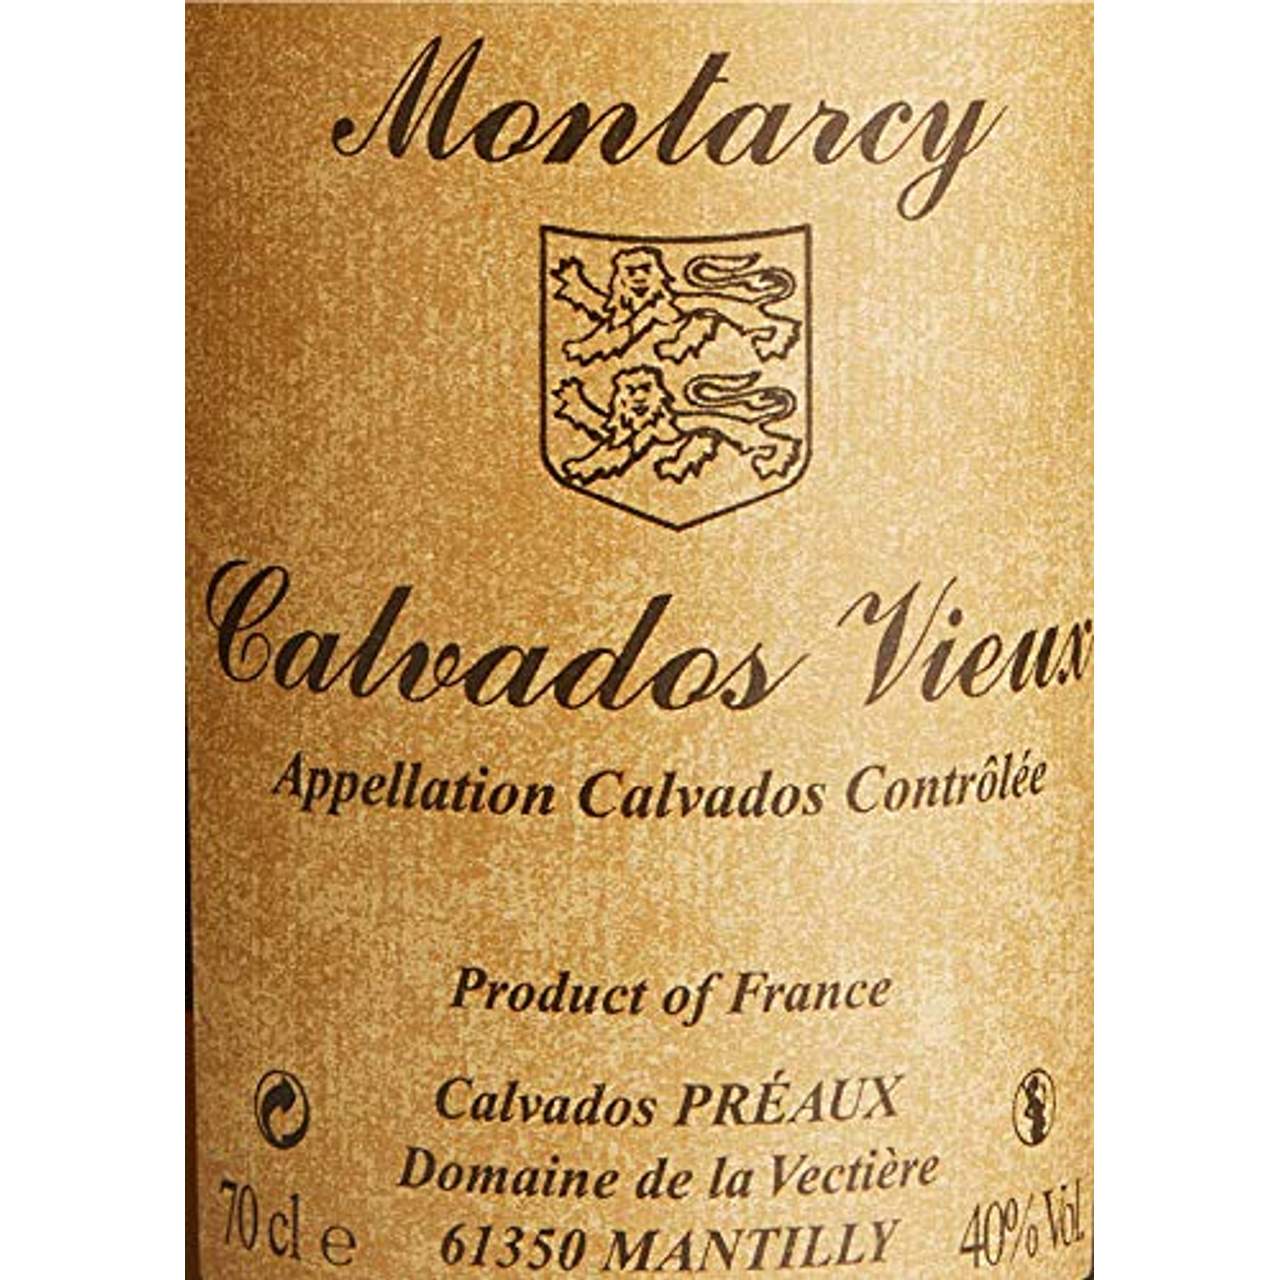 Montarcy Calvados Vieux AOC Vsop 40% vol